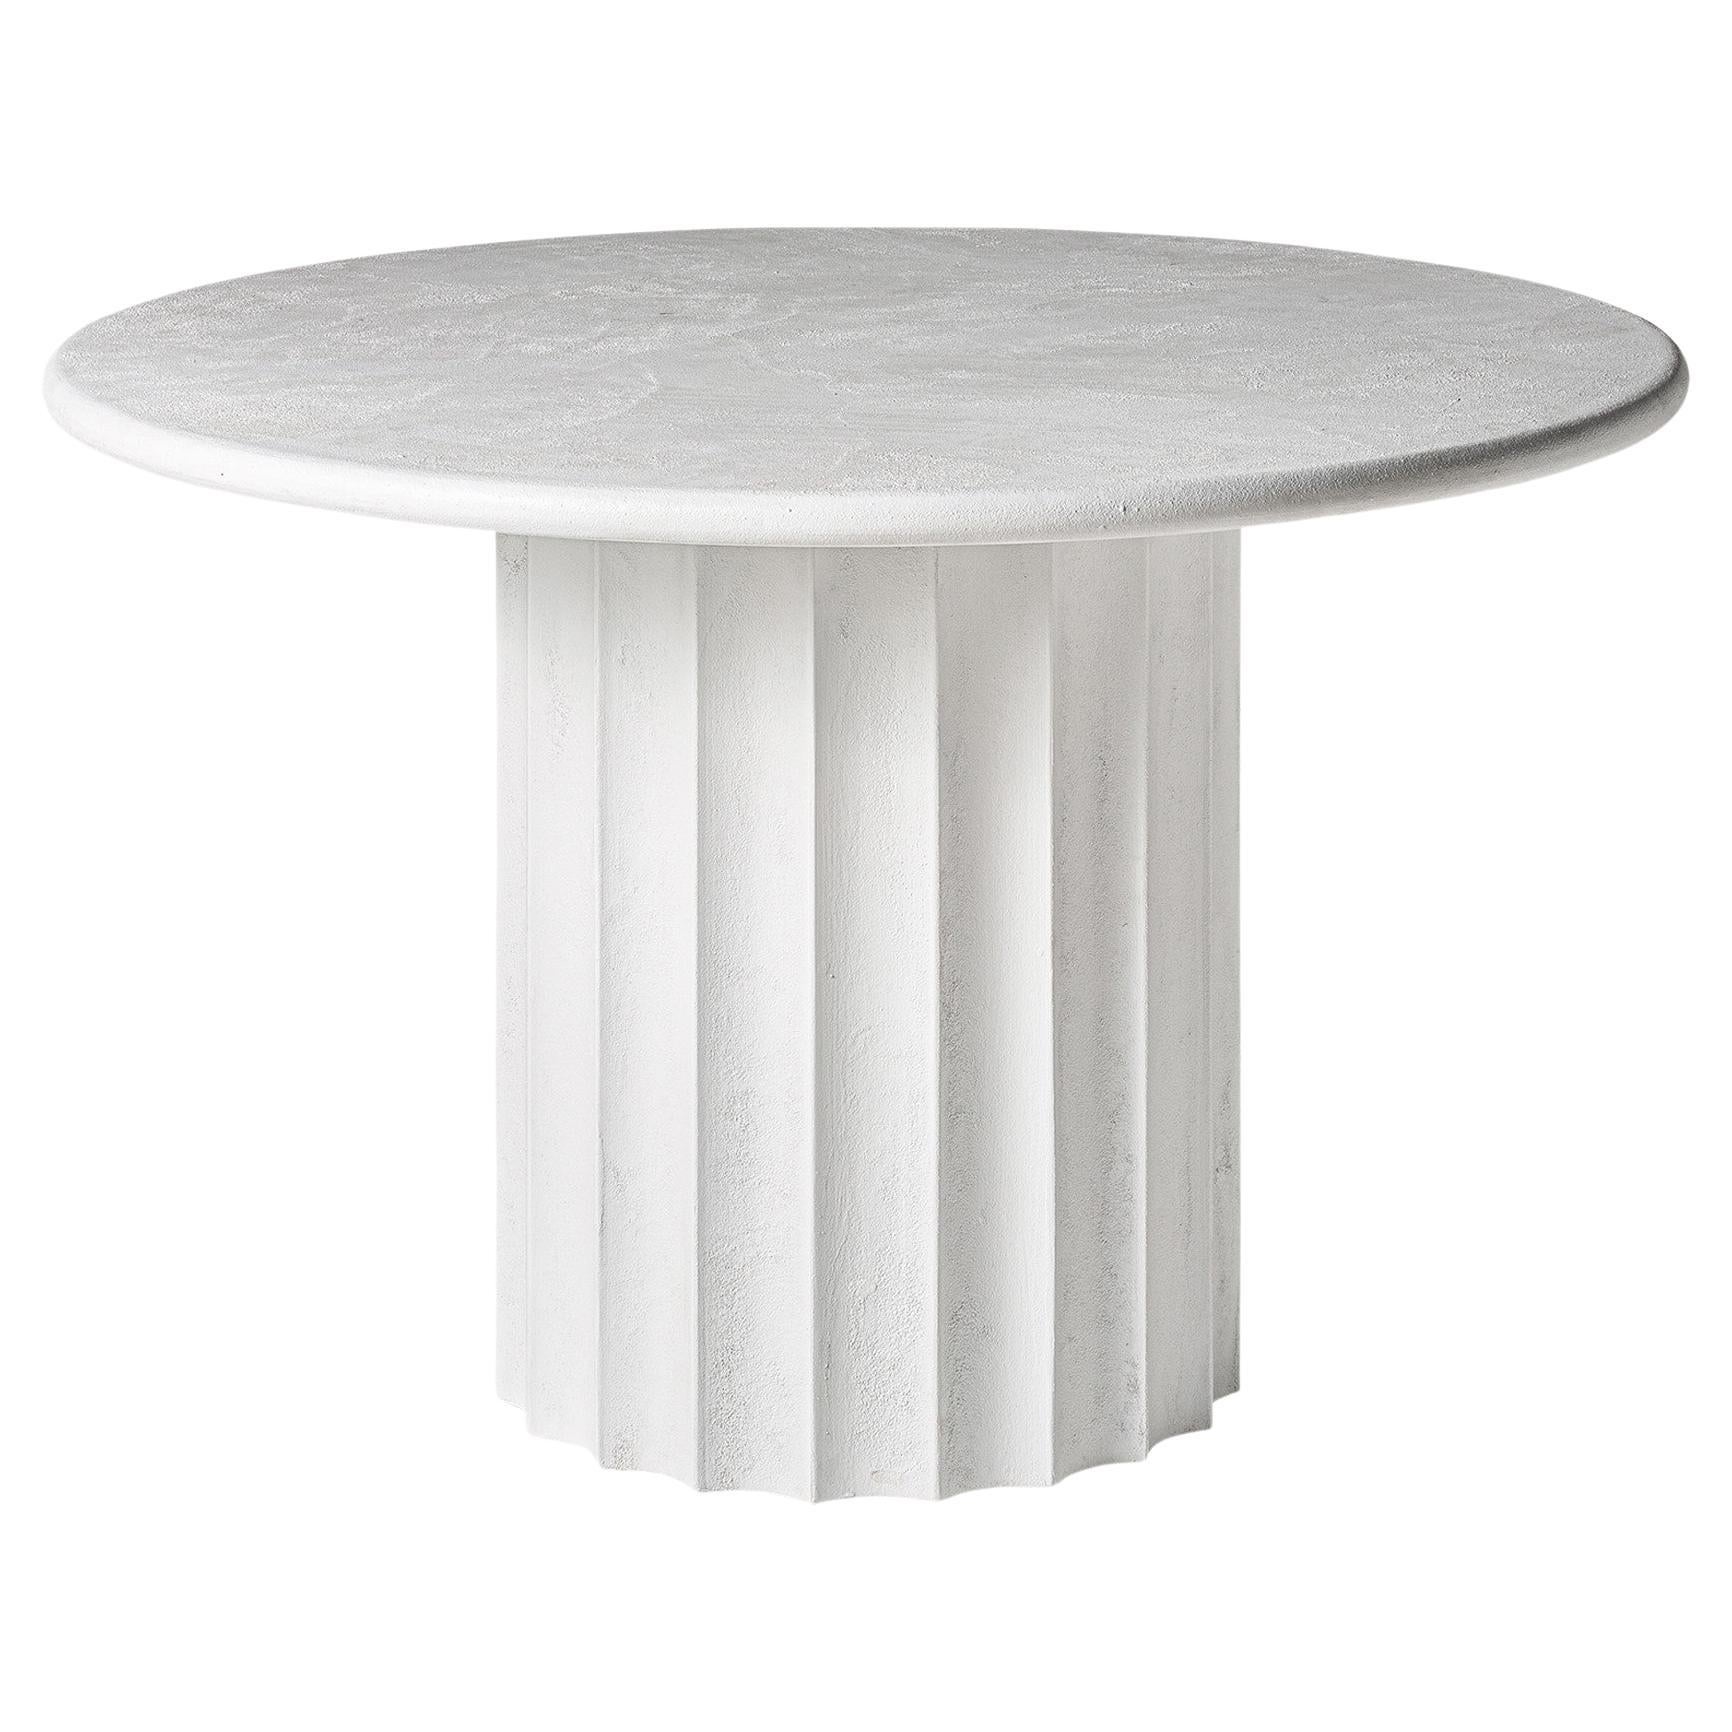 Italian 1970s Design Style White Concrete Pedestal Table For Sale